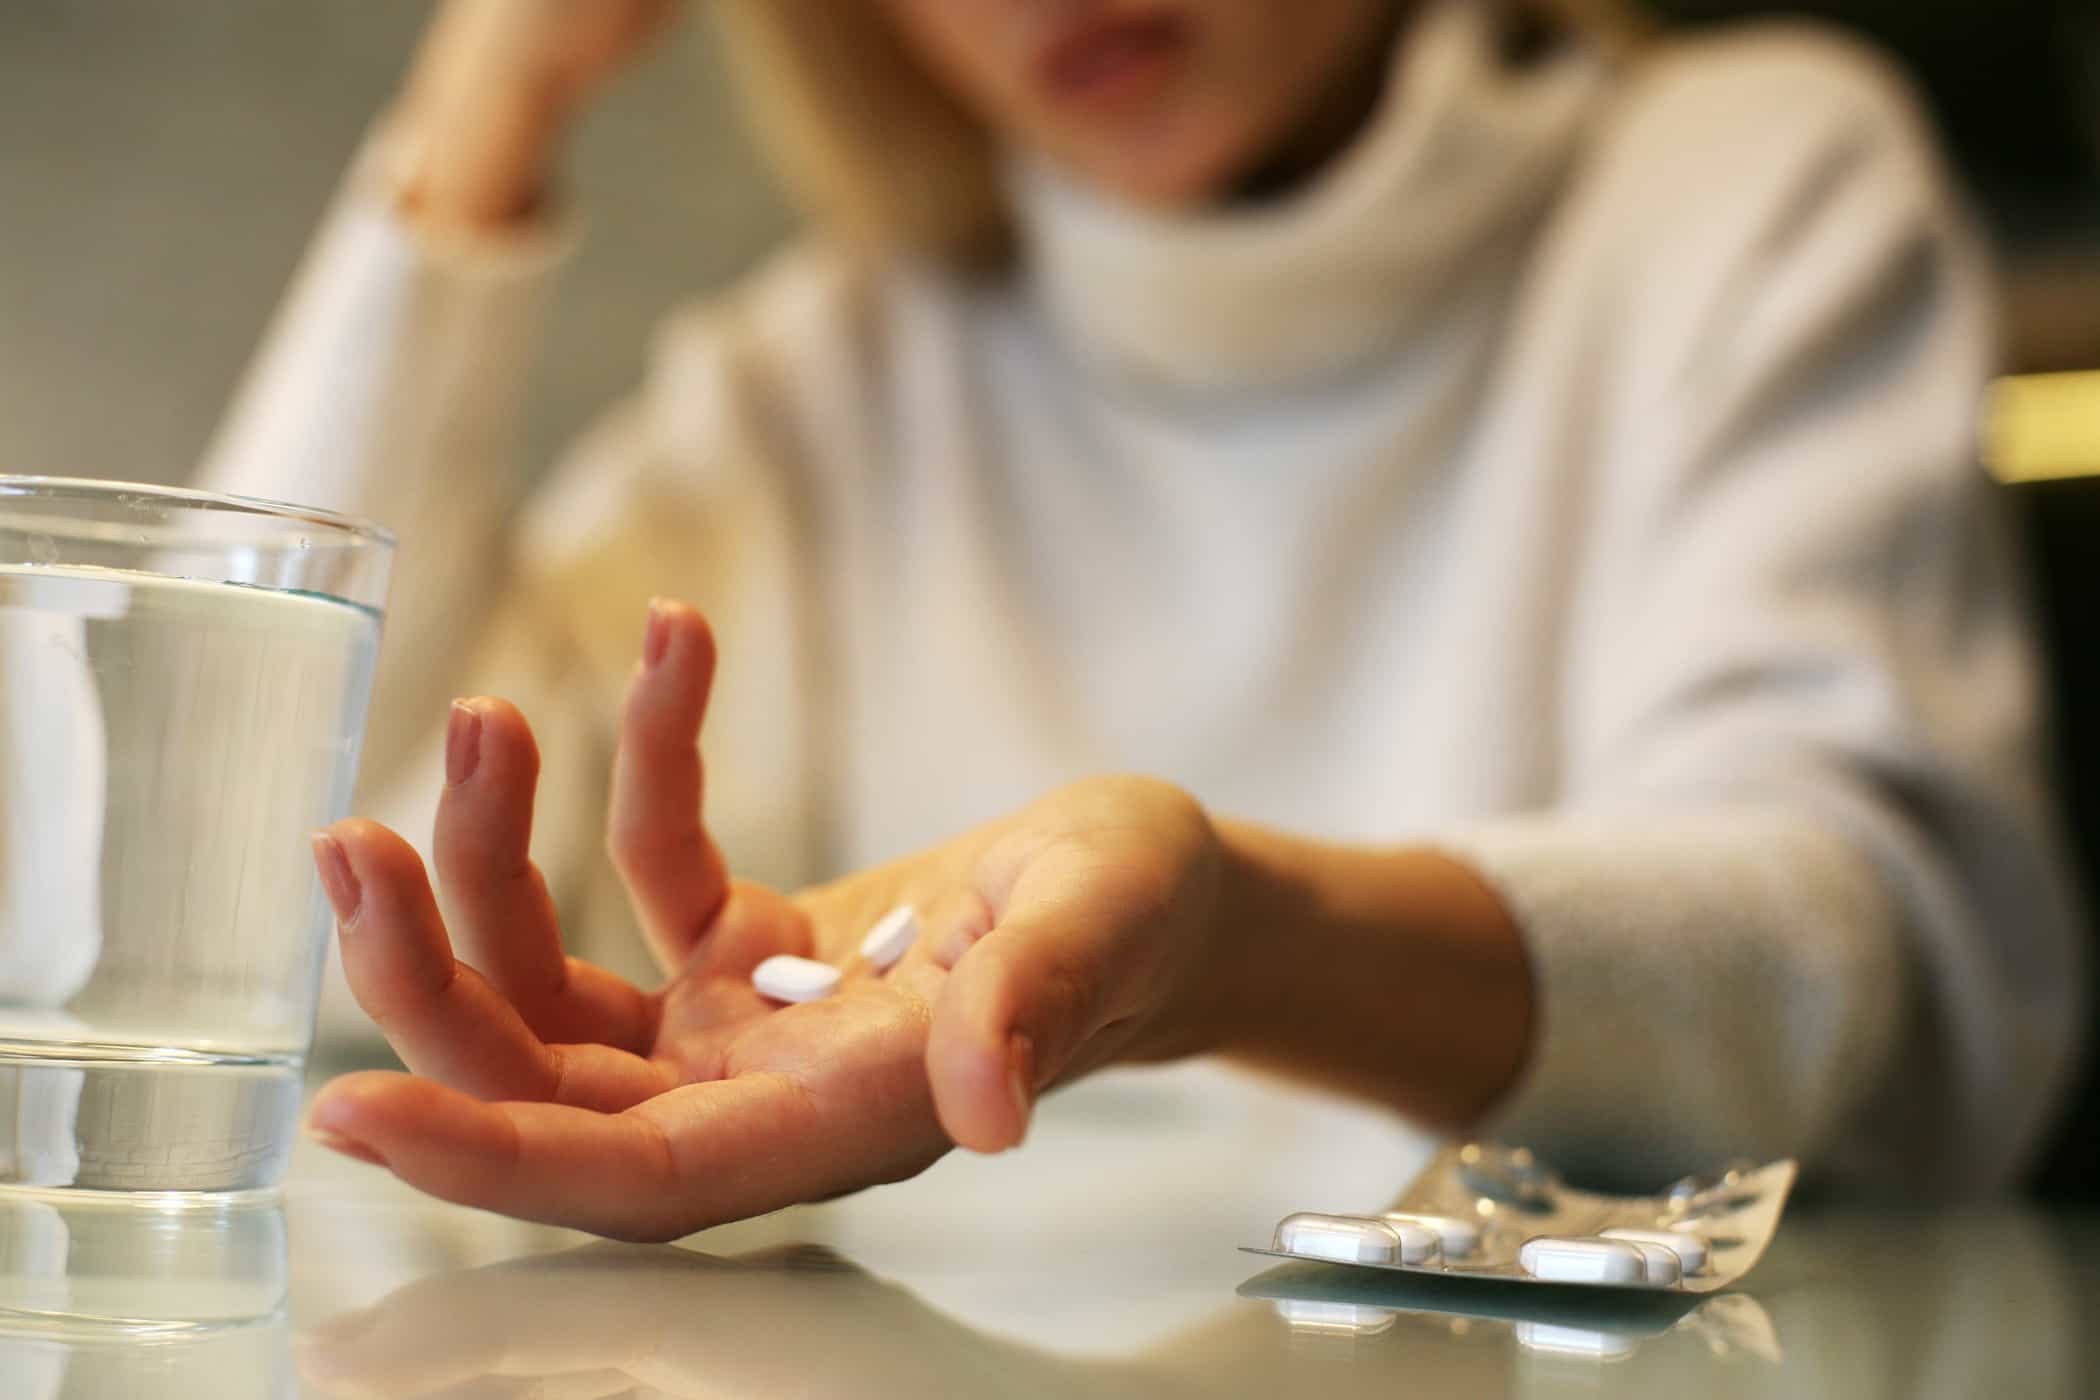 Lijekovi protiv bolova više ne djeluju? Evo što biste trebali učiniti